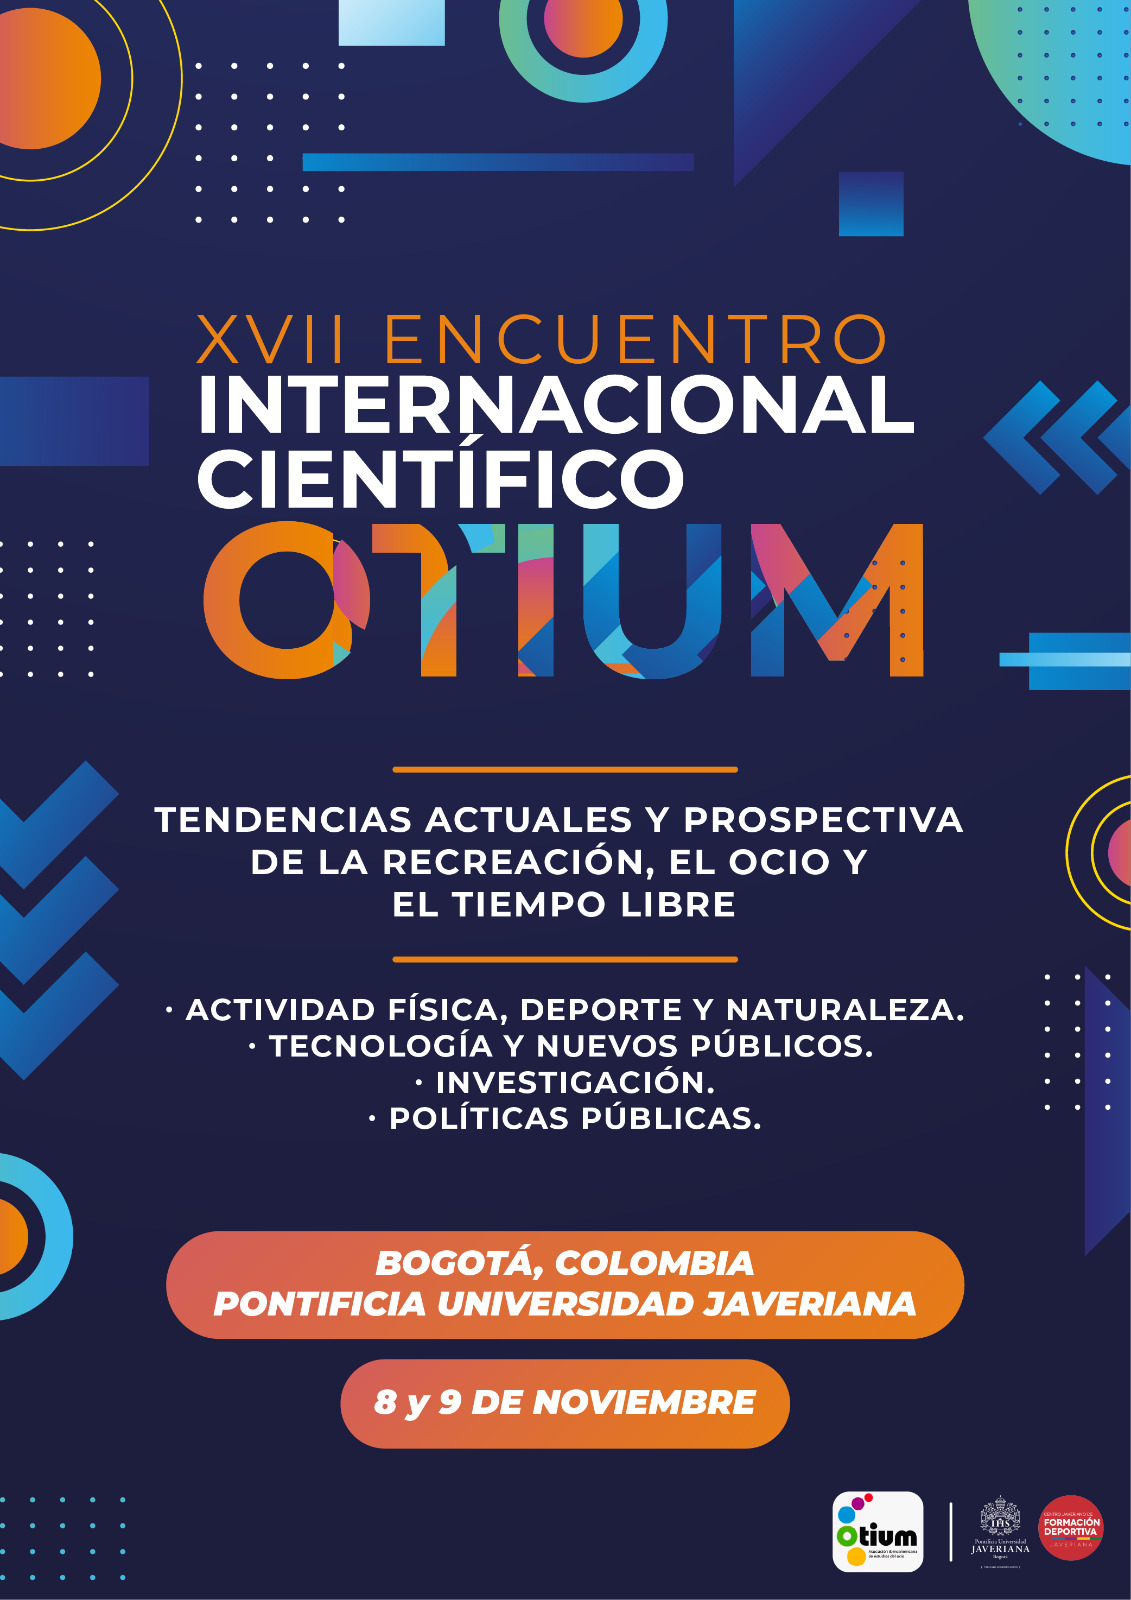 Programación do XVII Encuentro Científico Internacional de OTIUM.